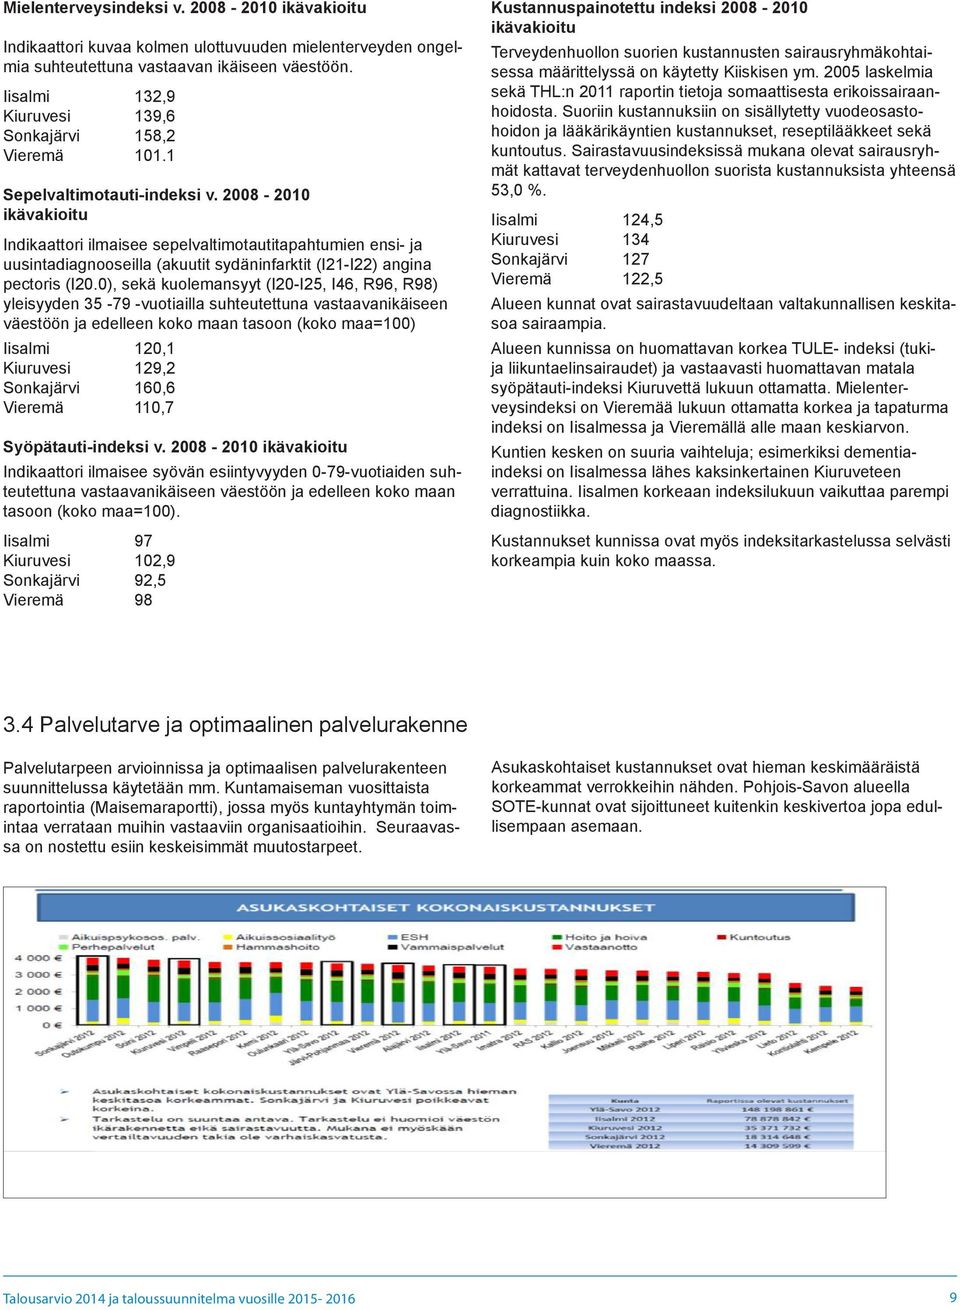 2008-2010 ikävakioitu Indikaattori ilmaisee sepelvaltimotautitapahtumien ensi- ja uusintadiagnooseilla (akuutit sydäninfarktit (I21-I22) angina pectoris (I20.